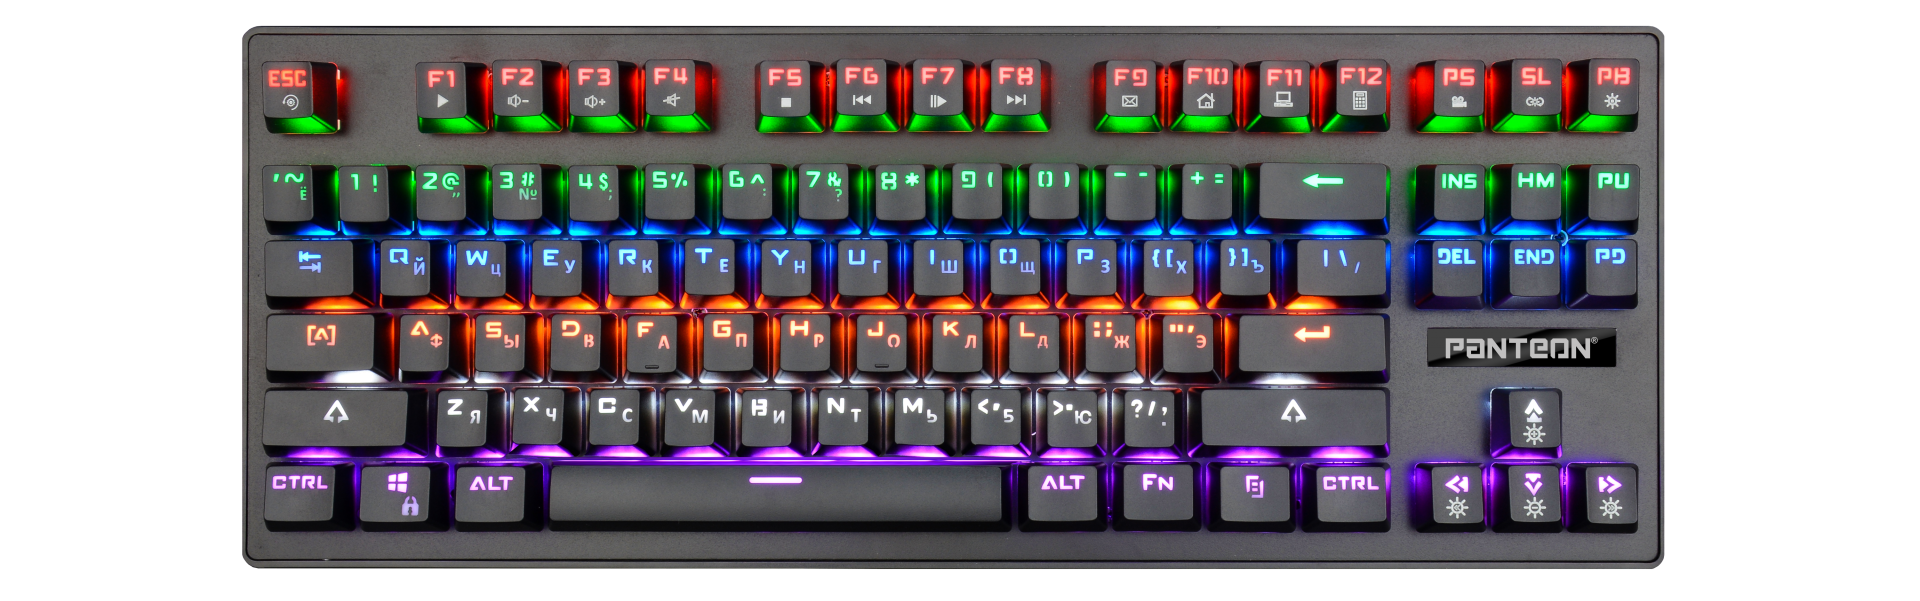 Игровая механическая клавиатура с LED-подсветкой PANTEON Т62